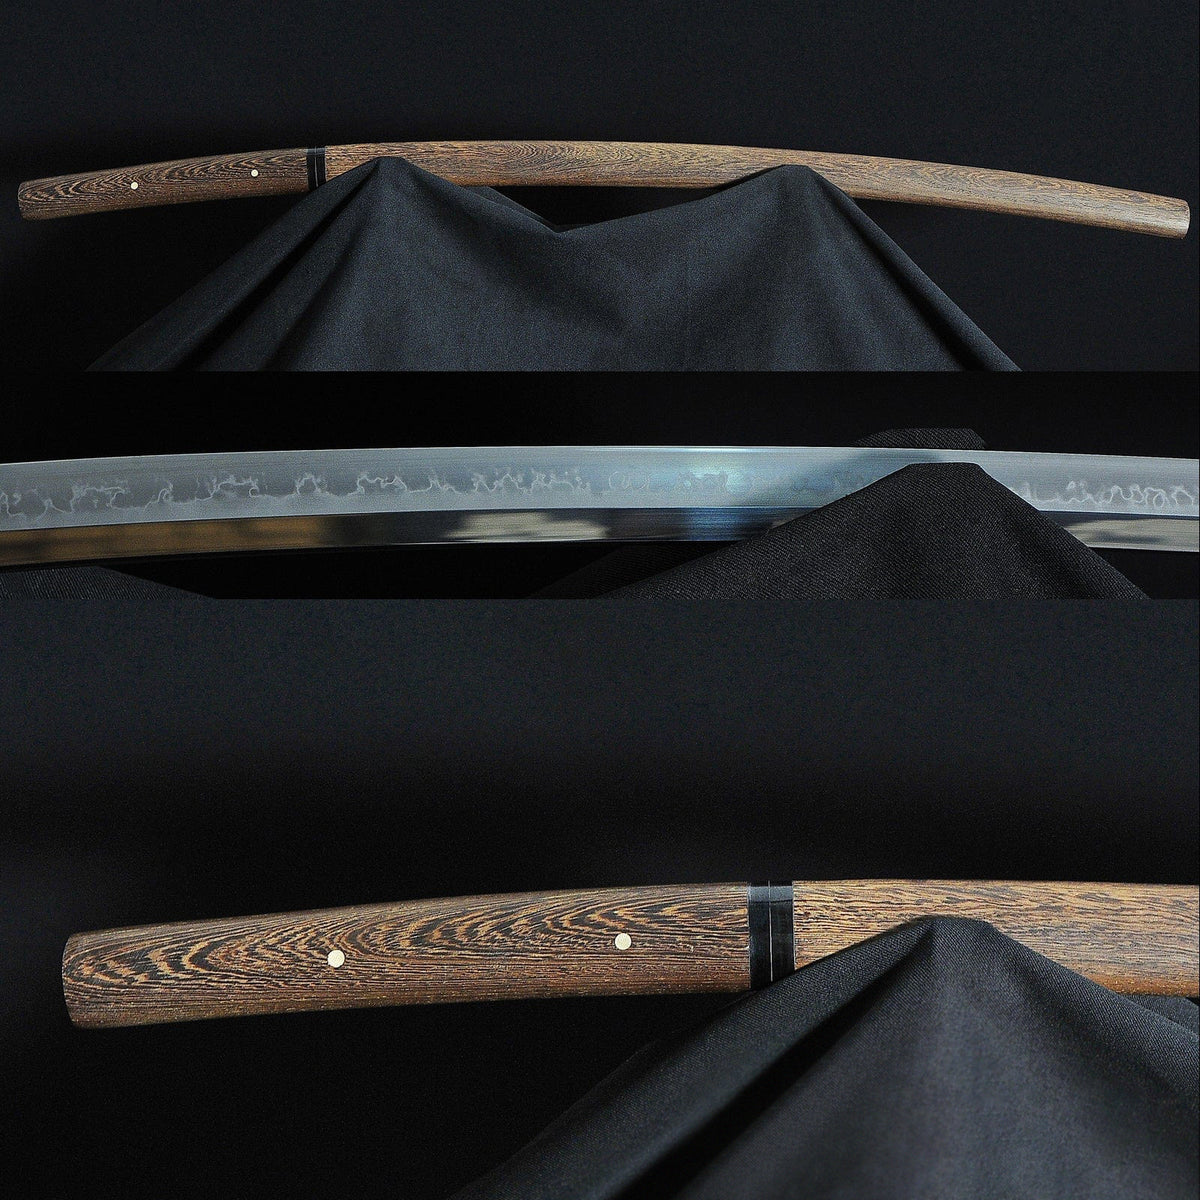 1095 High Carbon Steel Clay Tempered Japanese Choji Battle Ready Shirasaya Katana Sword